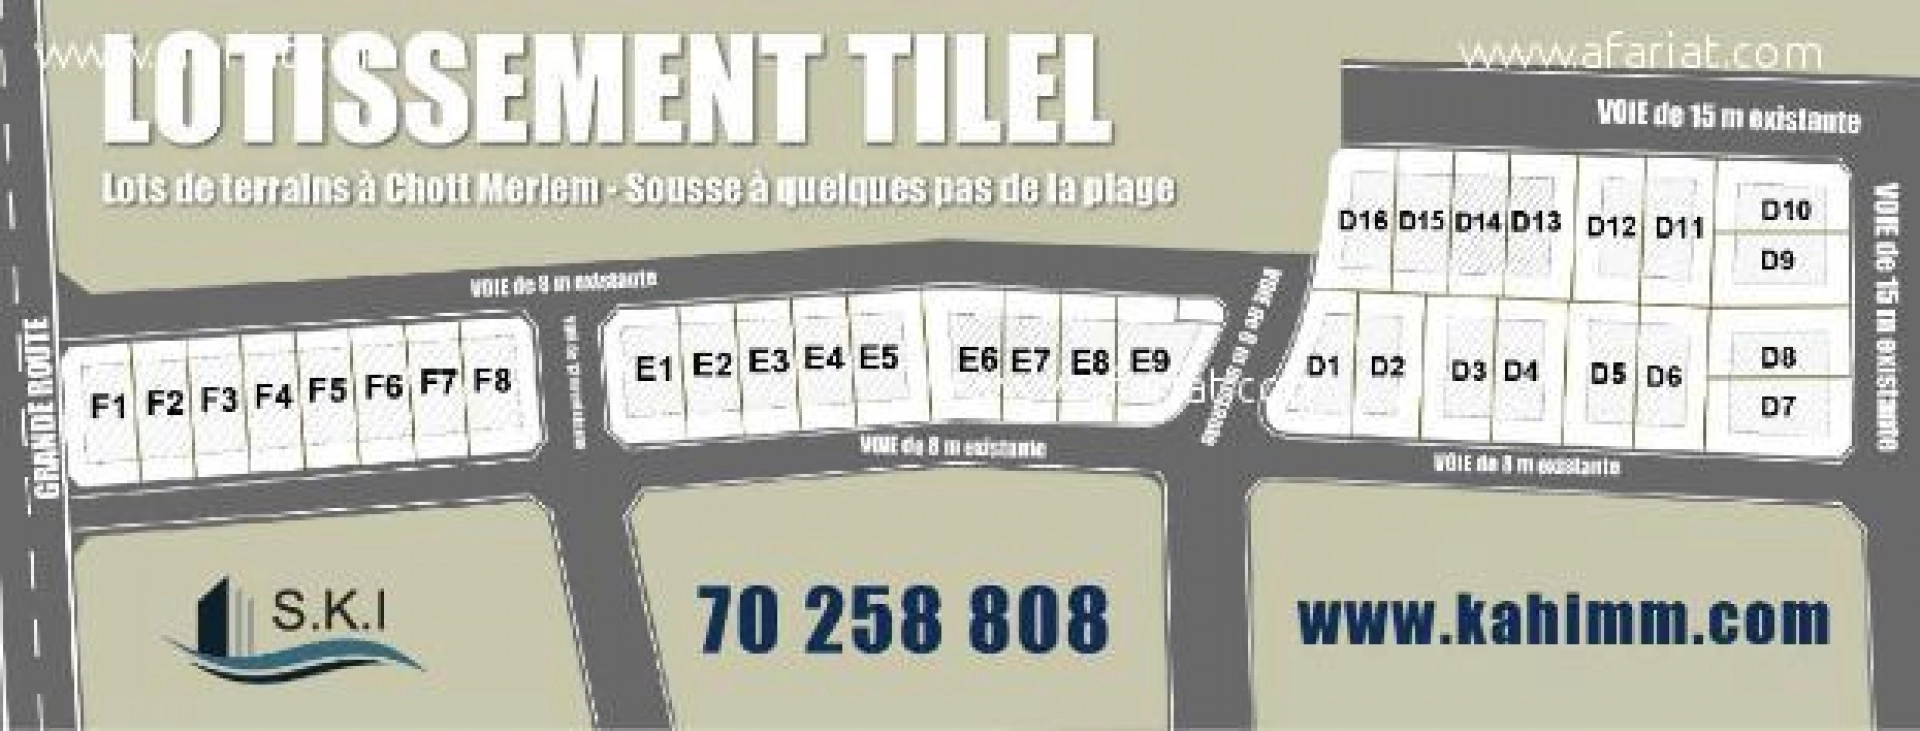 Terrains à vendre, Lotissement "TILEL"  à Chott Meriem